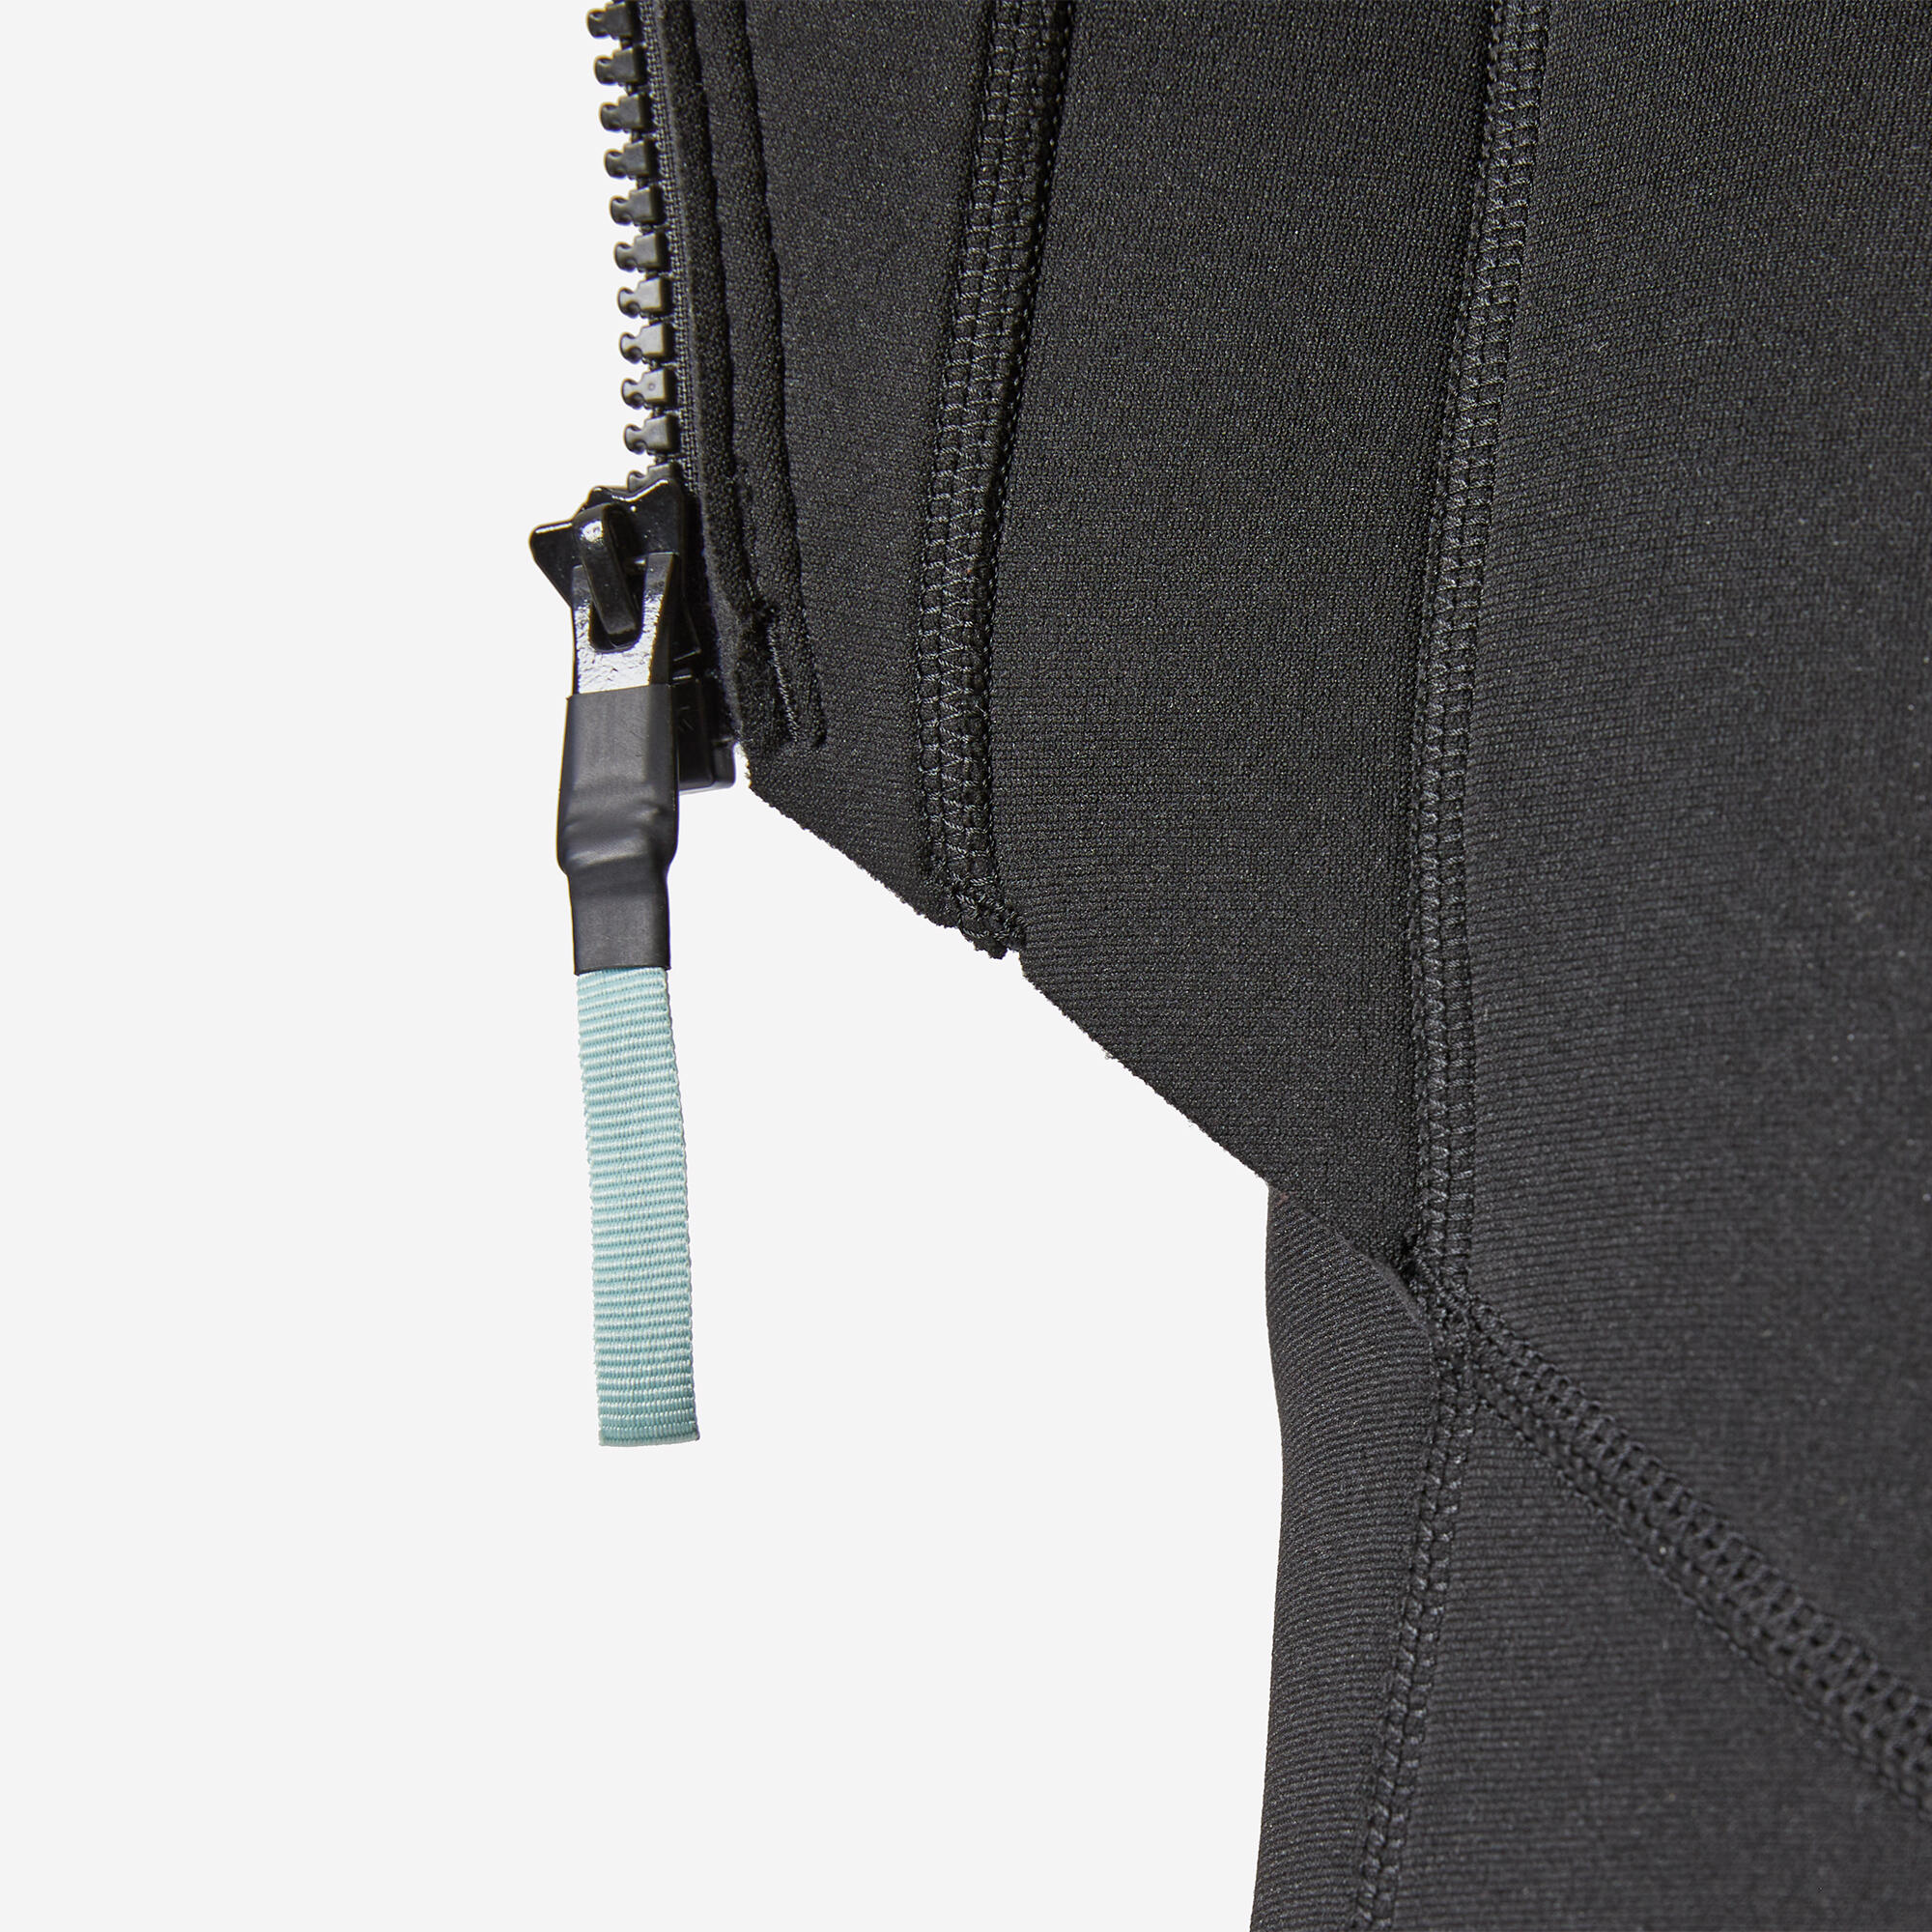 Women's 2 mm neoprene shorty wetsuit with diagonal front zip Easy 7/13